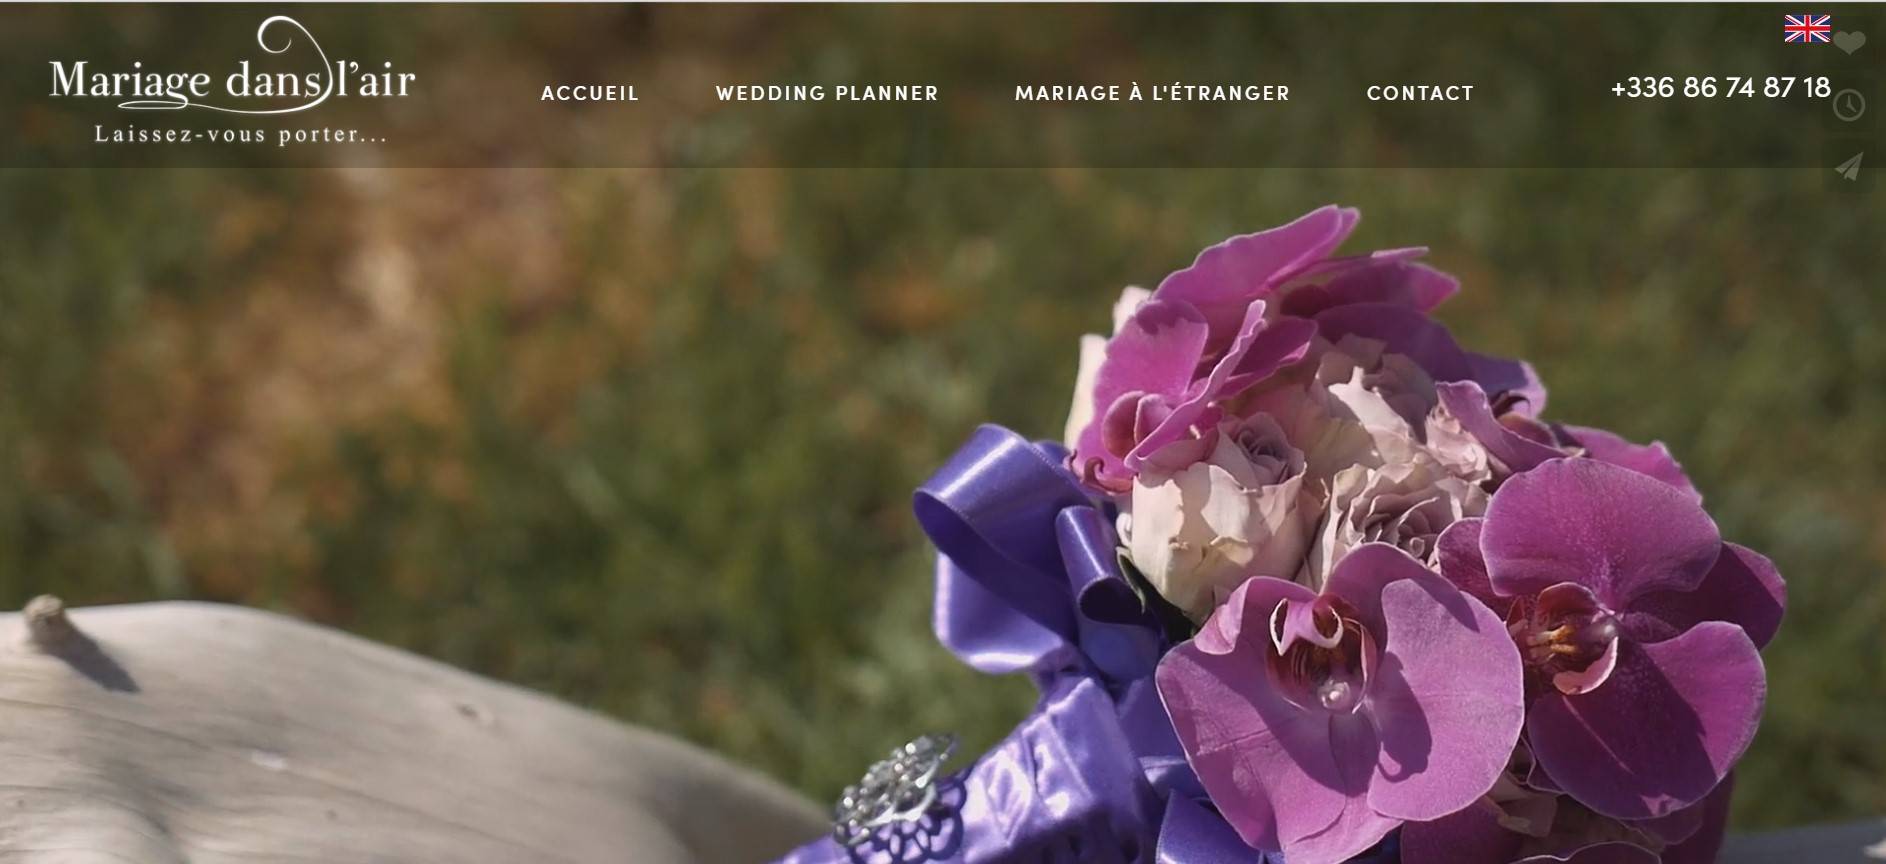 Wedding planner de luxe, organisation de mariage sur-mesure à Paris et à l'étranger - Mariage dans l'air